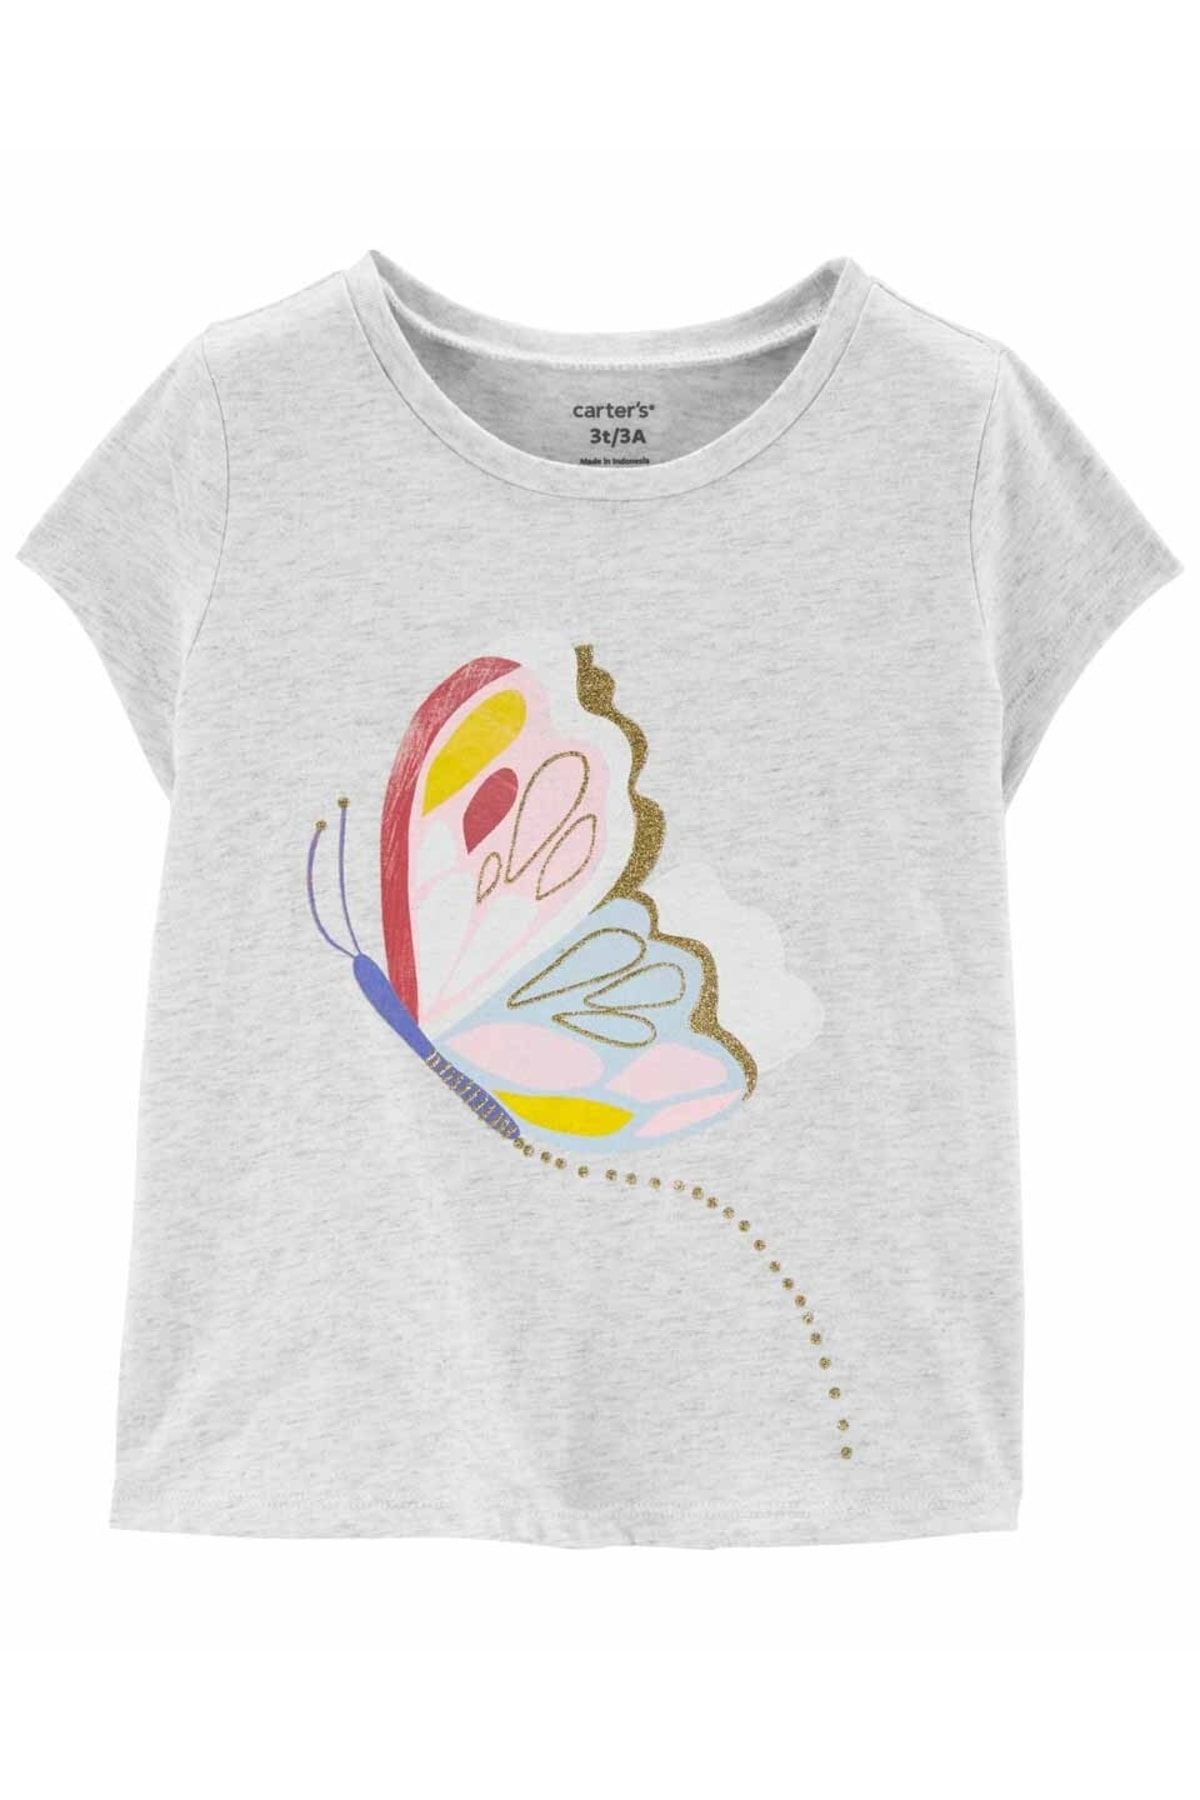 Carter's Küçük Kız Çocuk Kelebek Desenli Tshirt Açık Gri